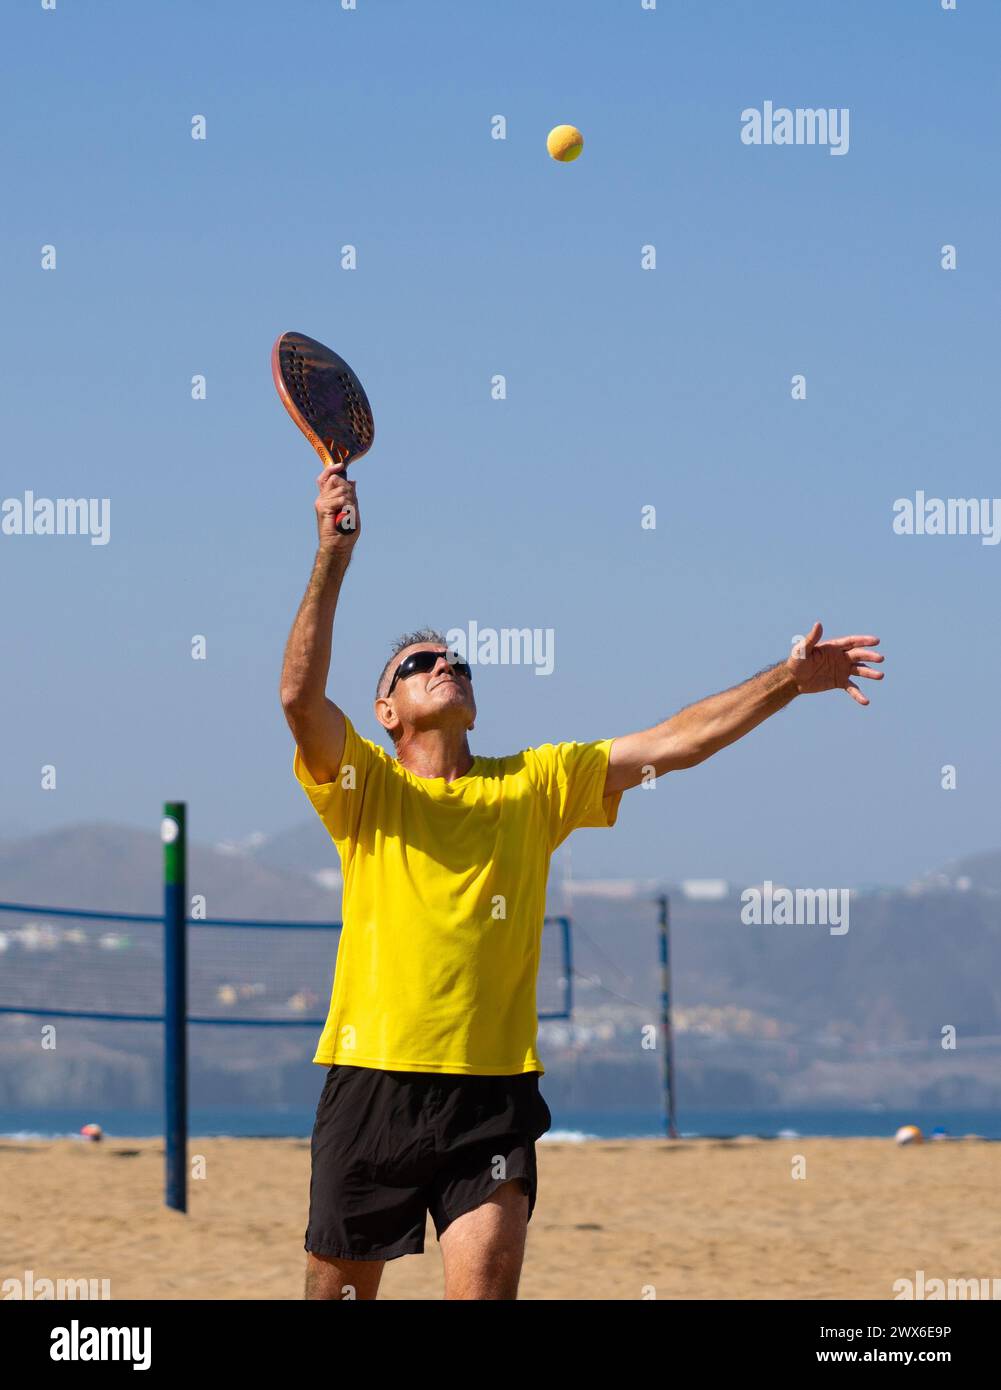 Homme de plus de 60 ans jouant au tennis de plage. Homme âgé avec un mode de vie sain Banque D'Images